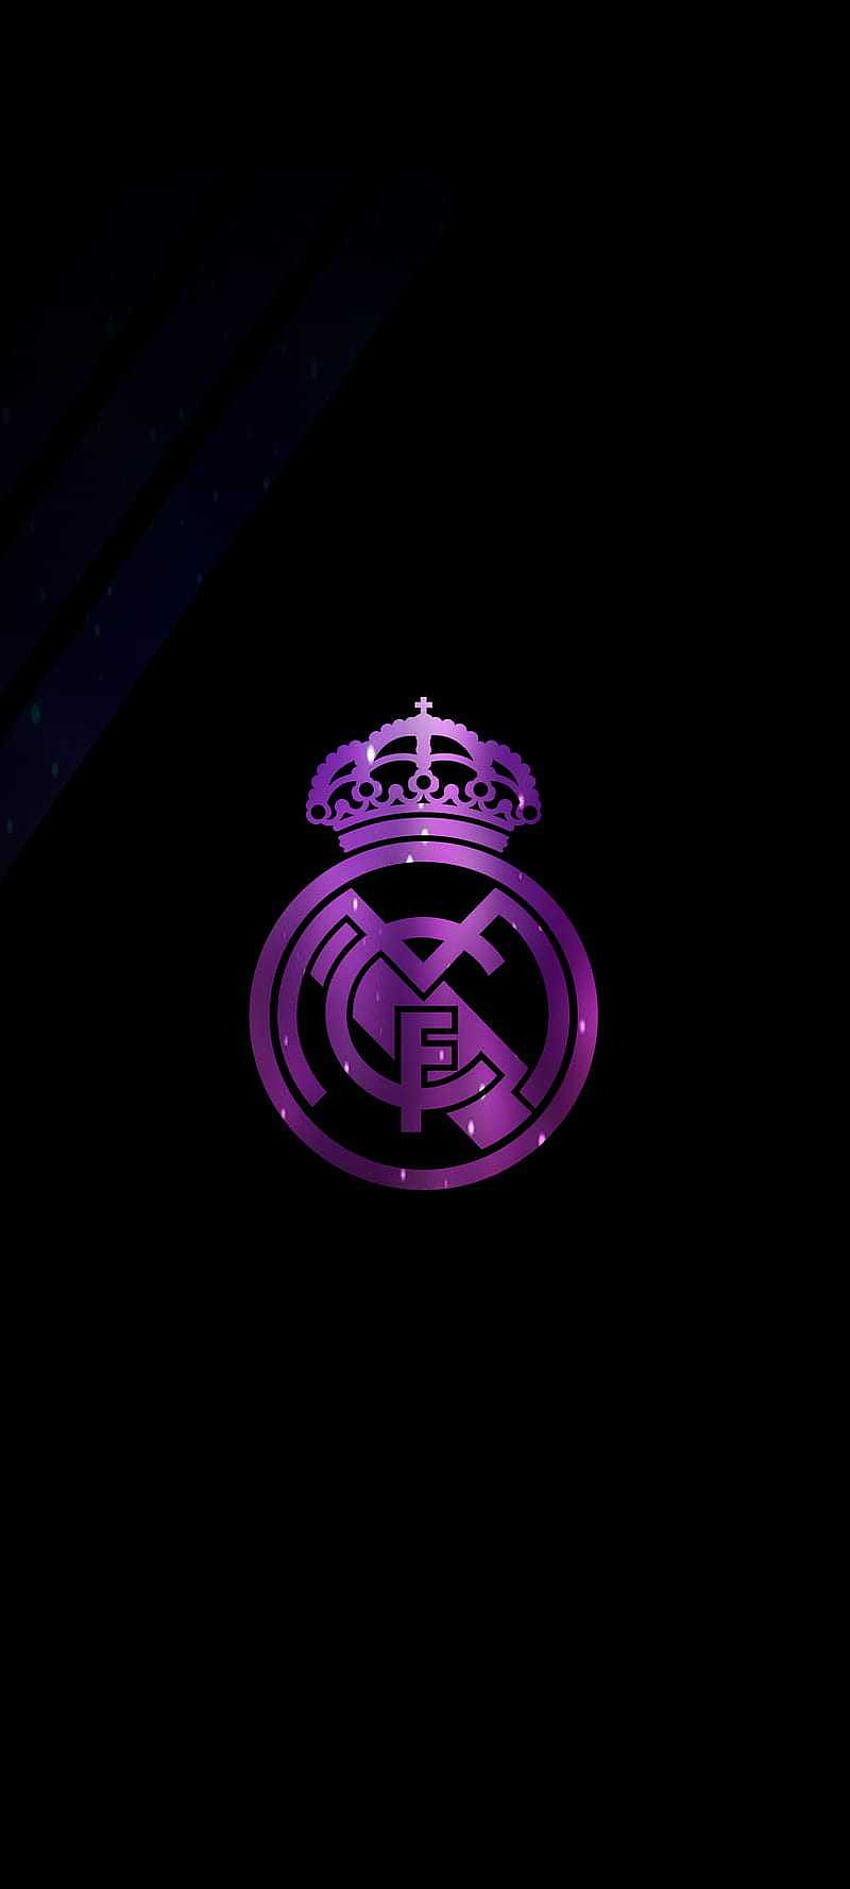 Real Madrid , Adidas Real Madrid HD phone wallpaper